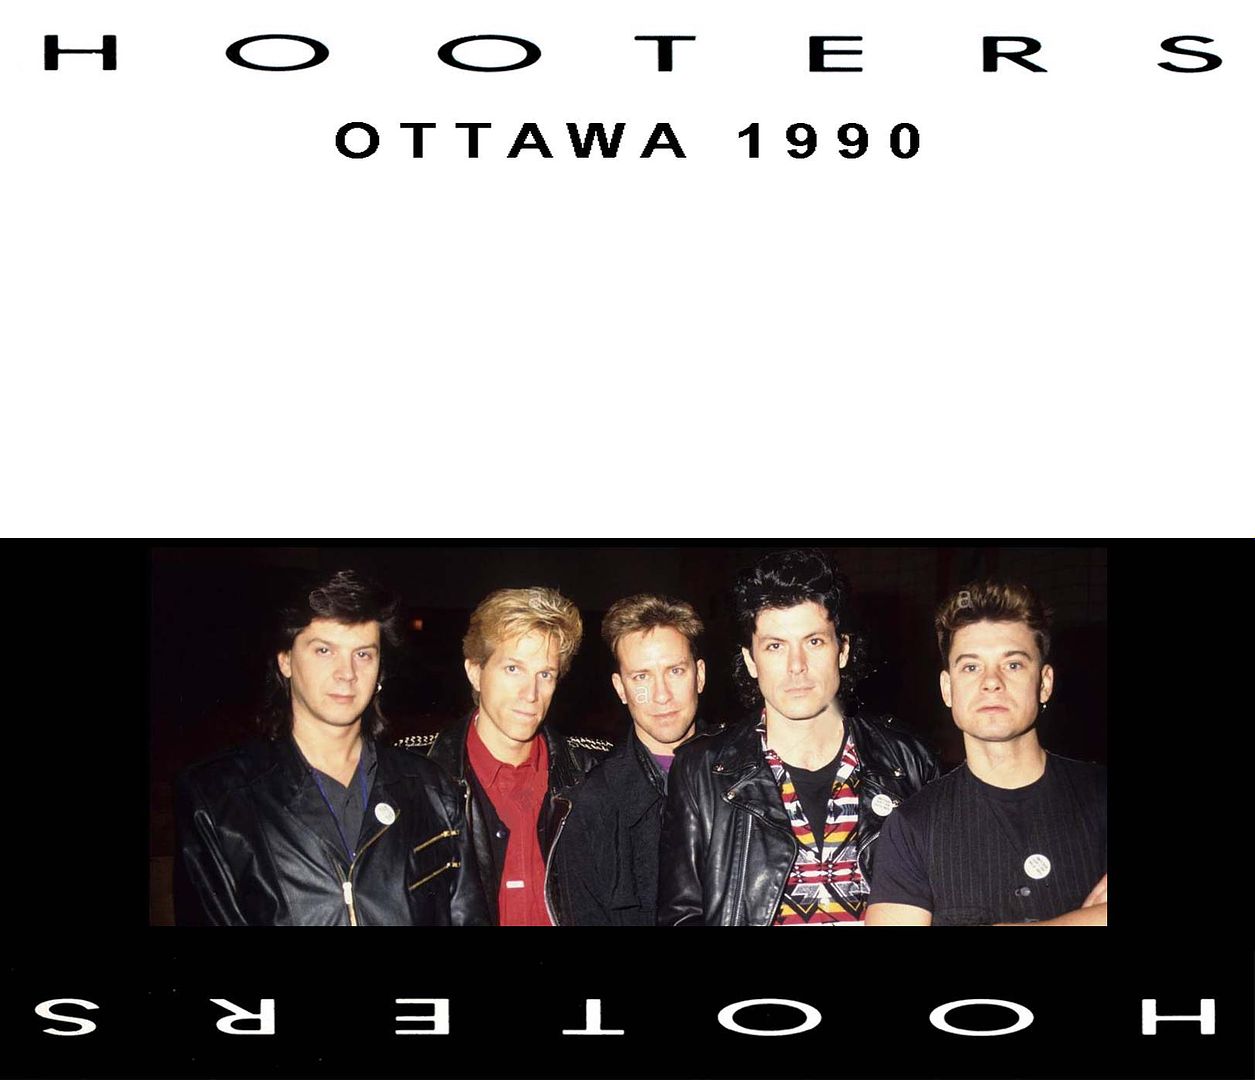 photo Hooters-Ottawa 1990 front_zpspsins1ng.jpg